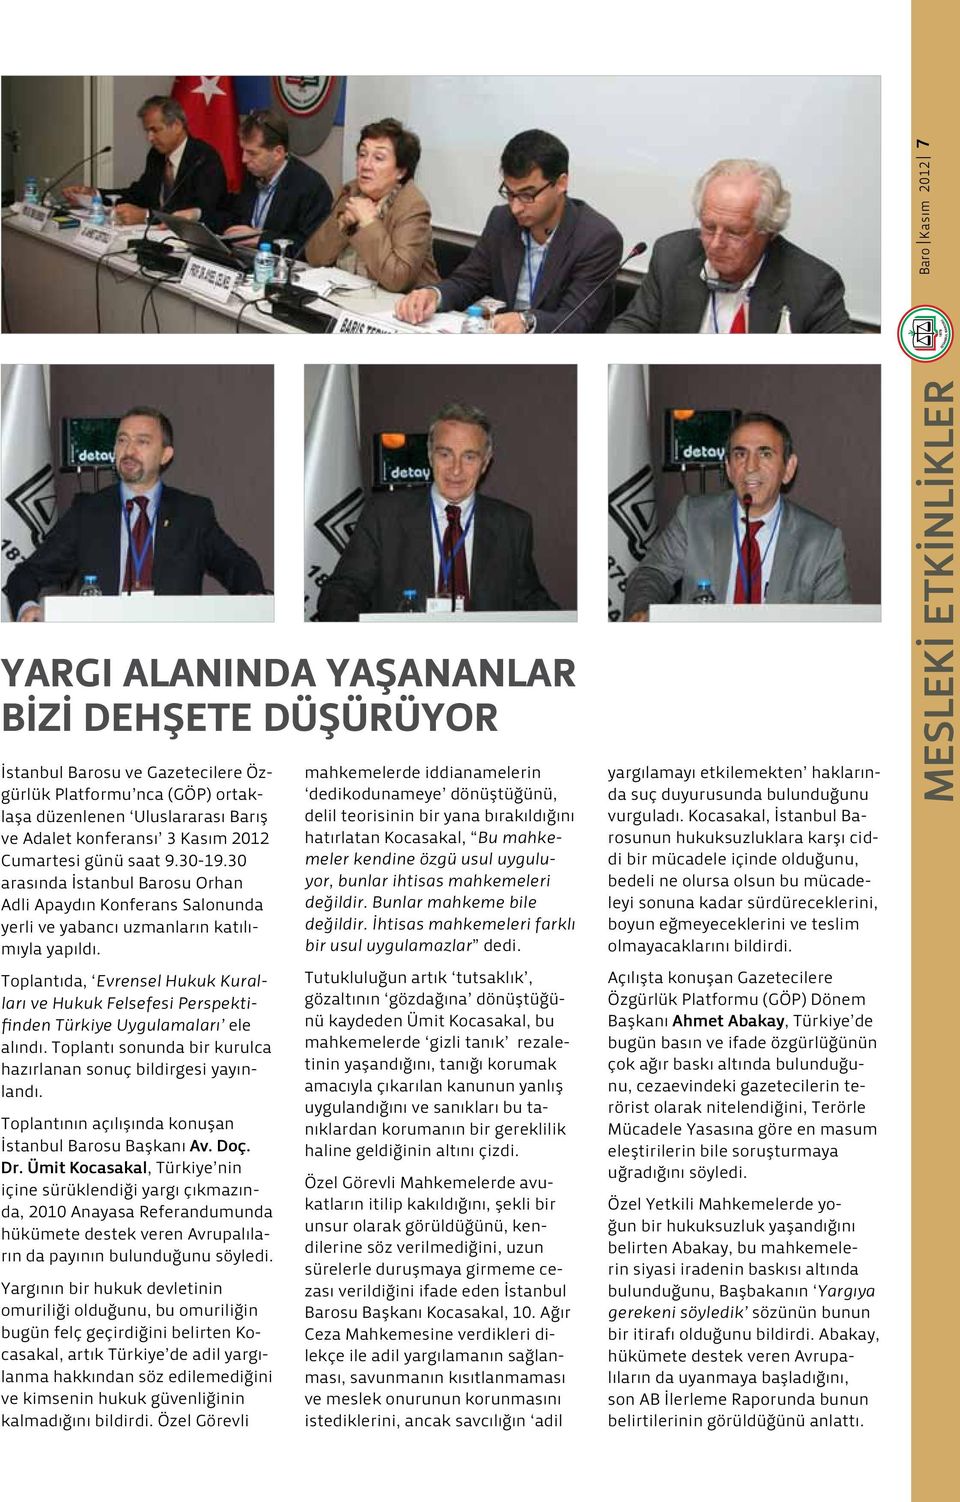 Toplantıda, Evrensel Hukuk Kuralları ve Hukuk Felsefesi Perspektifinden Türkiye Uygulamaları ele alındı. Toplantı sonunda bir kurulca hazırlanan sonuç bildirgesi yayınlandı.